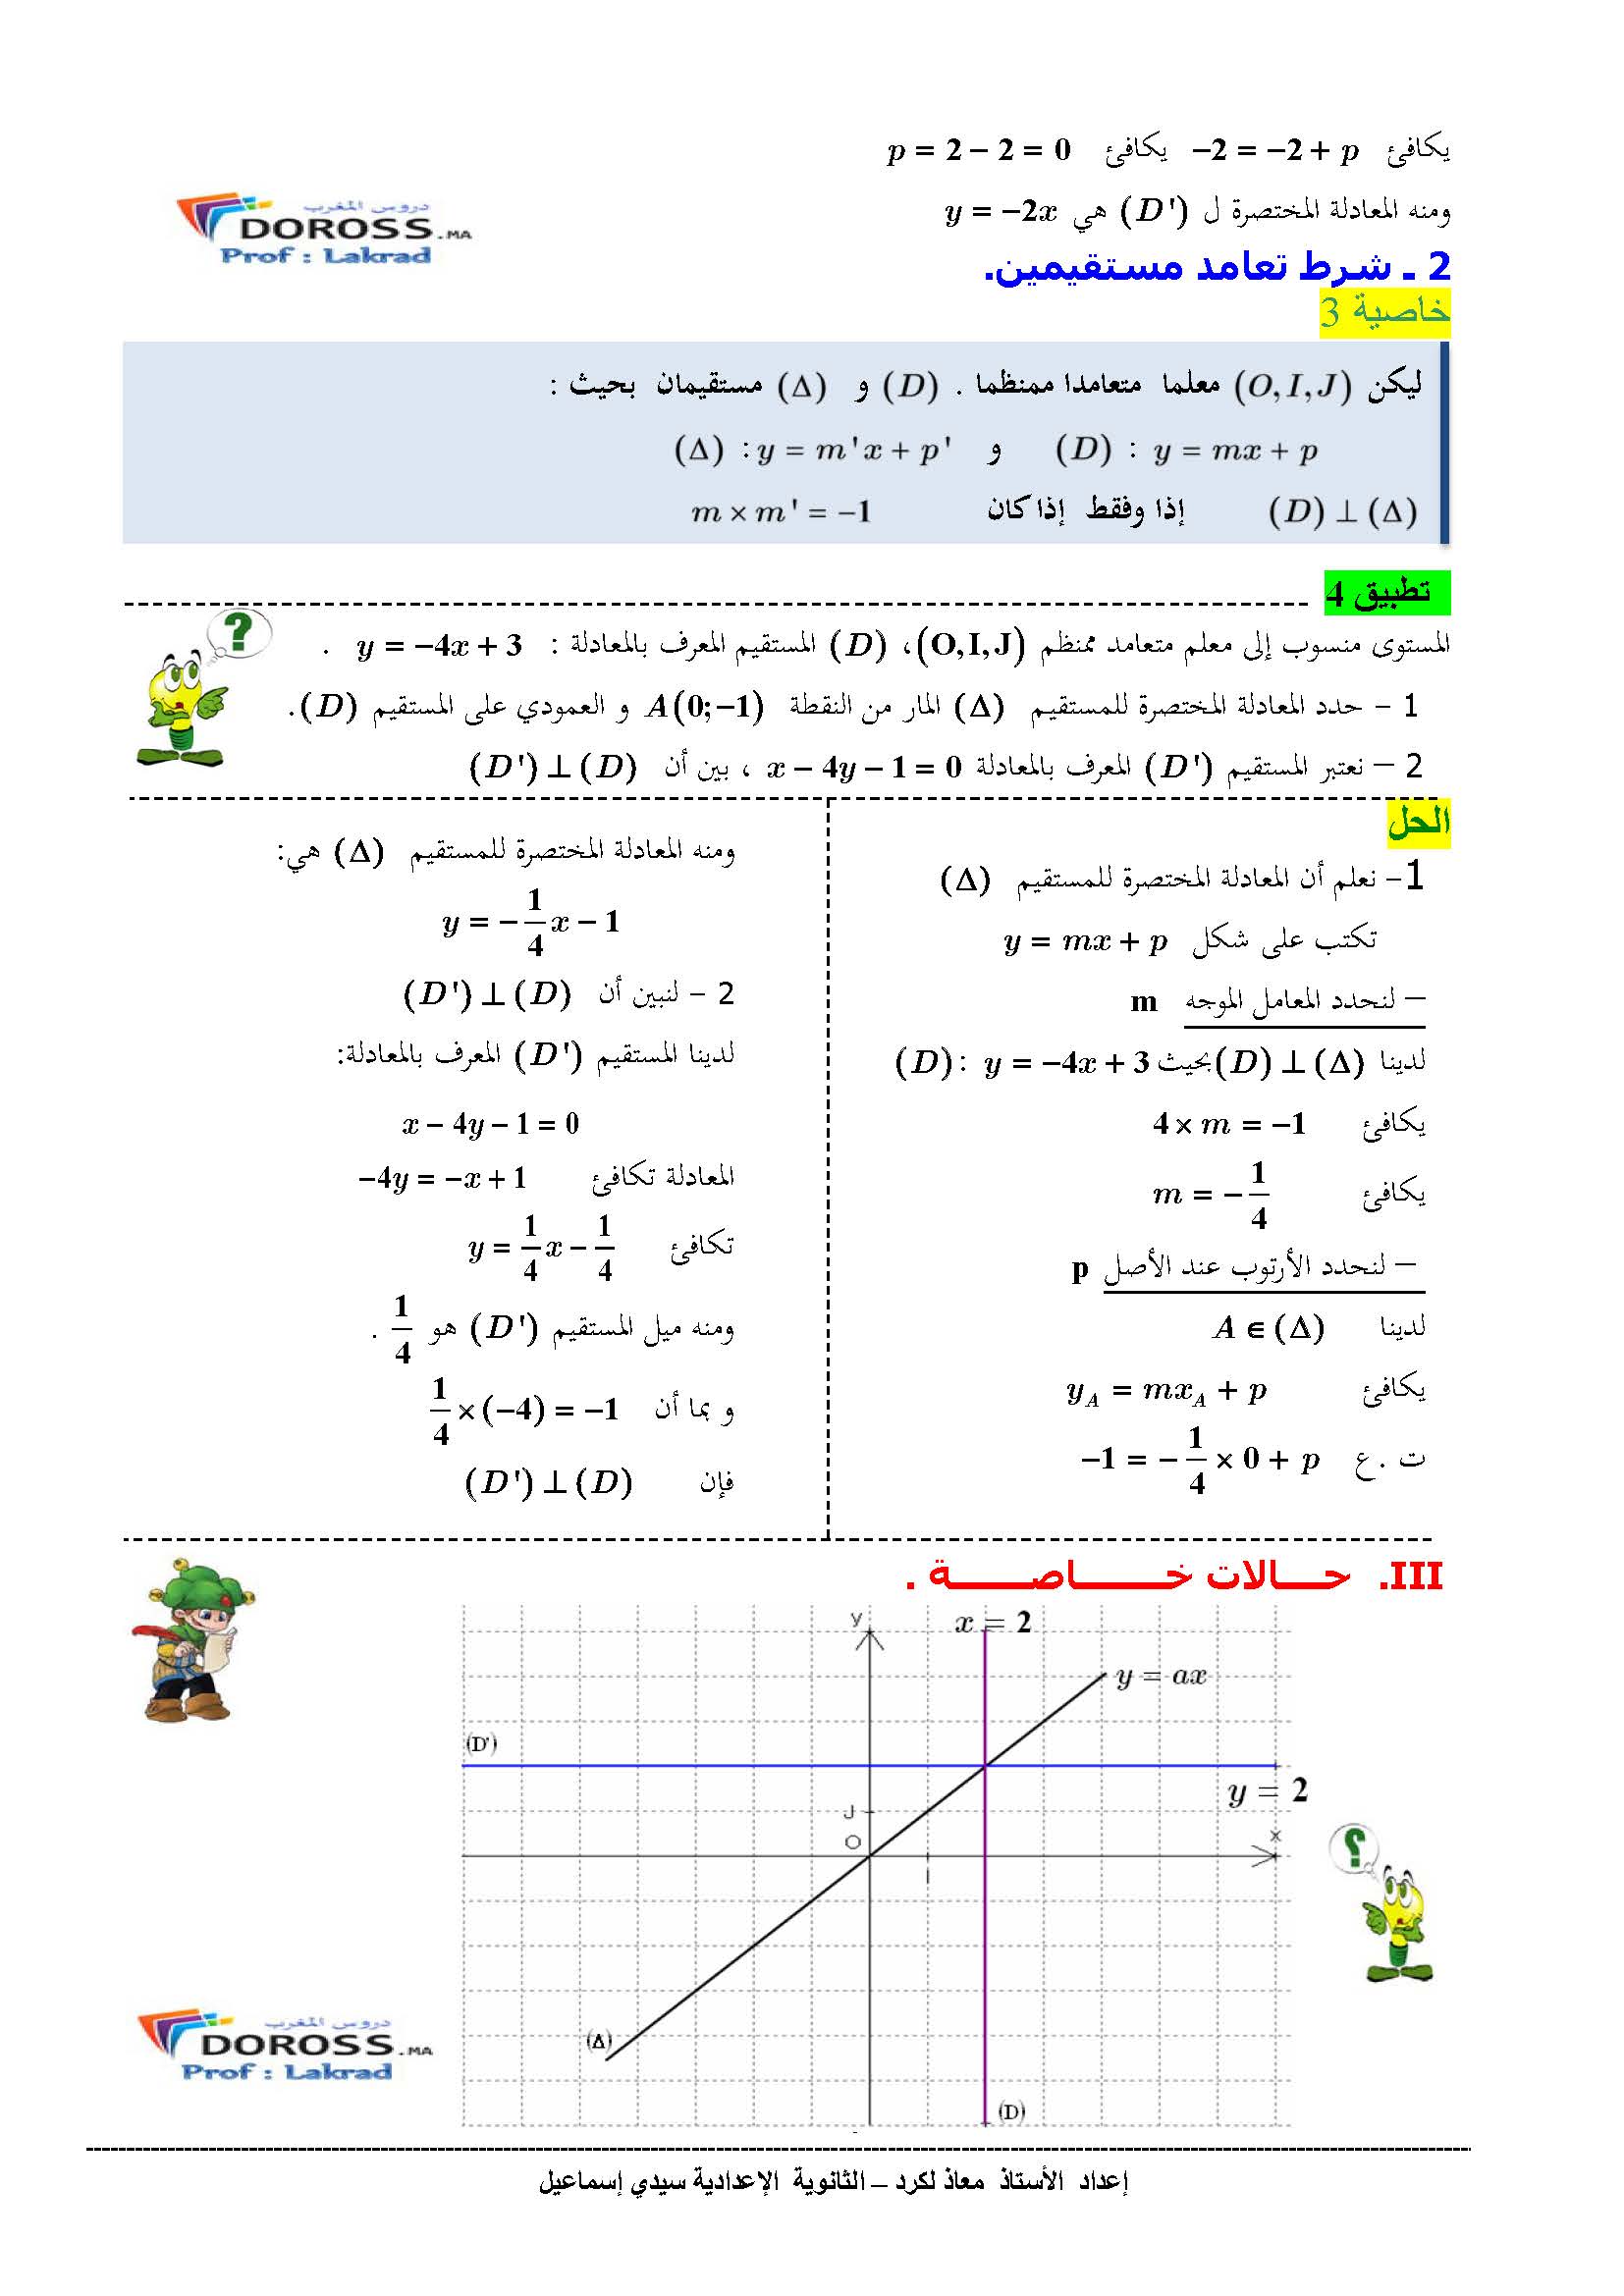 دروس الرياضيات : درس + تطبيقات معادلة مستقيم | الثالثة إعدادي 